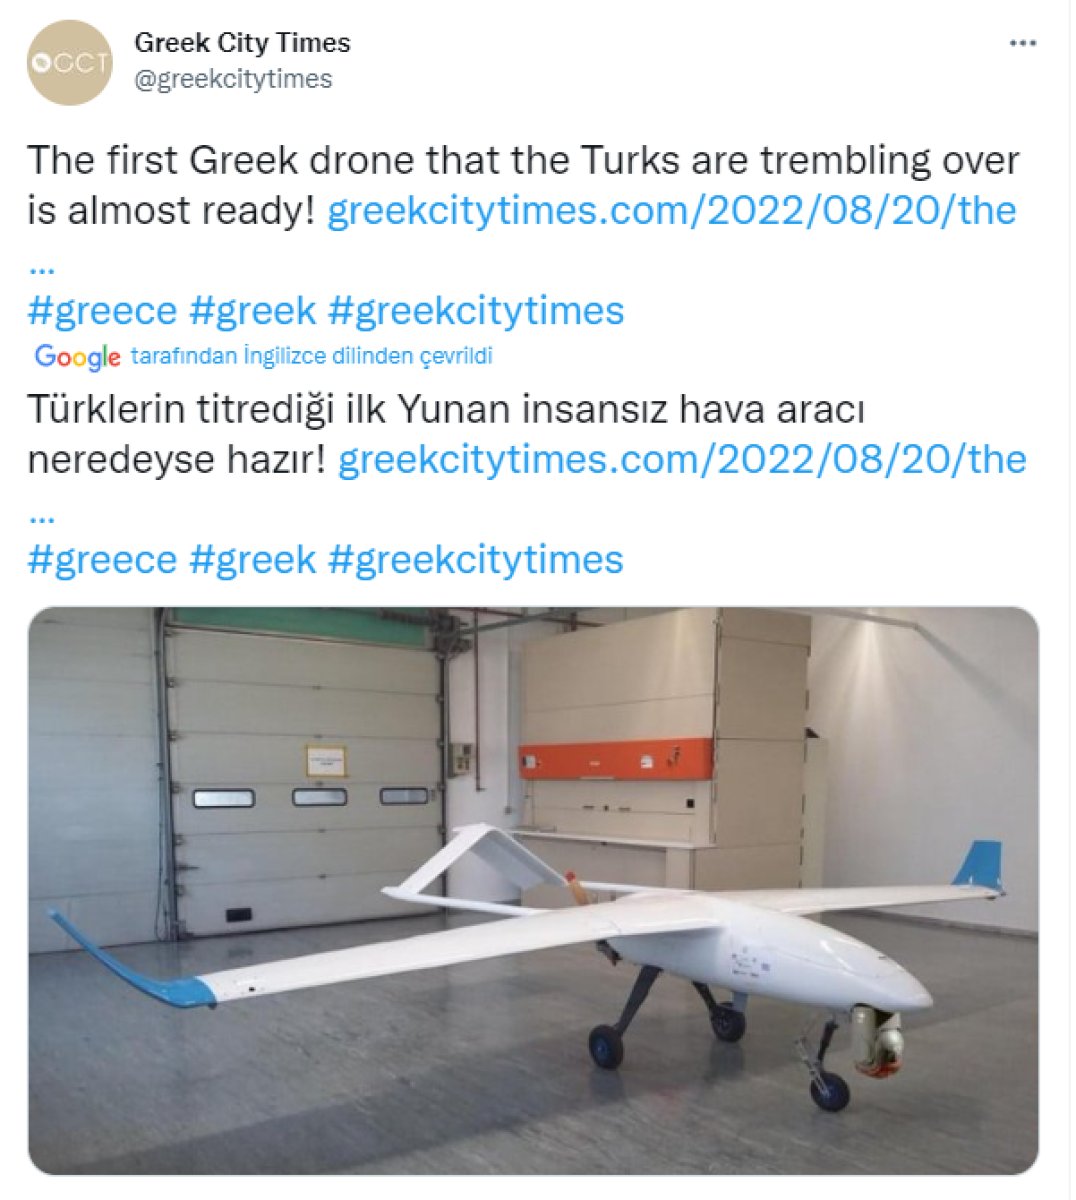 Greece produced UAV #1